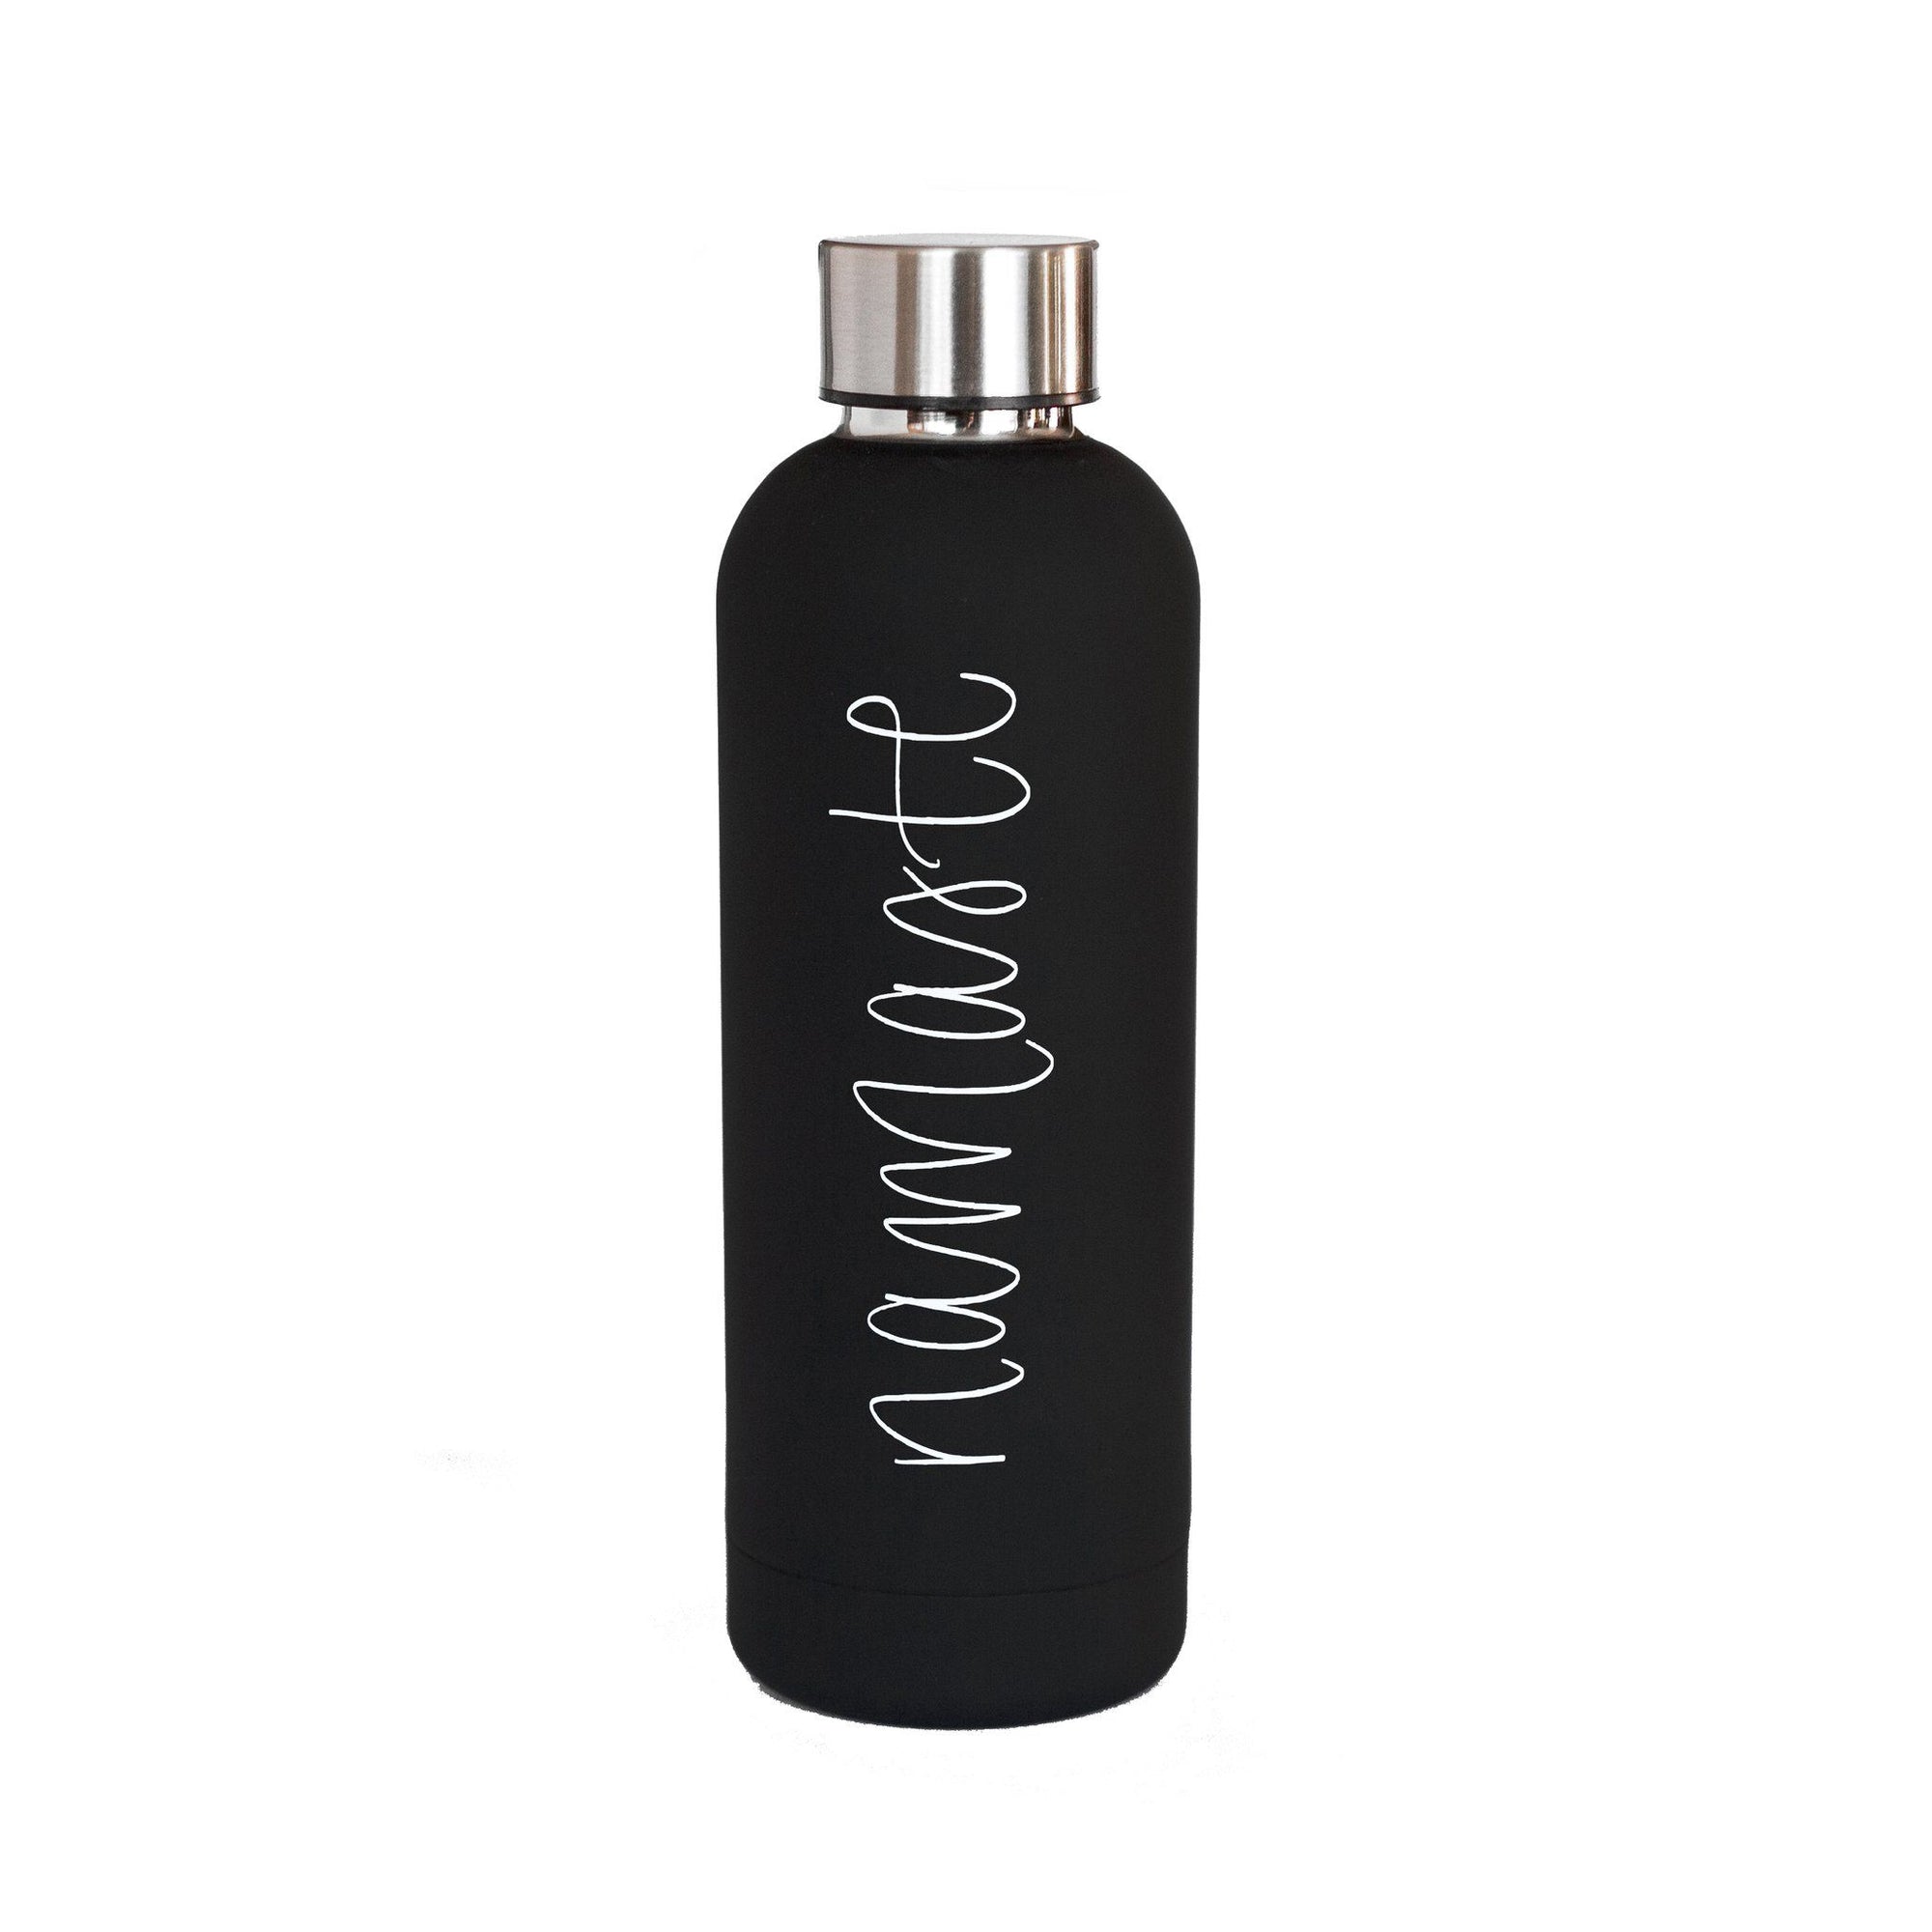 Namaste' Metal Water Bottle